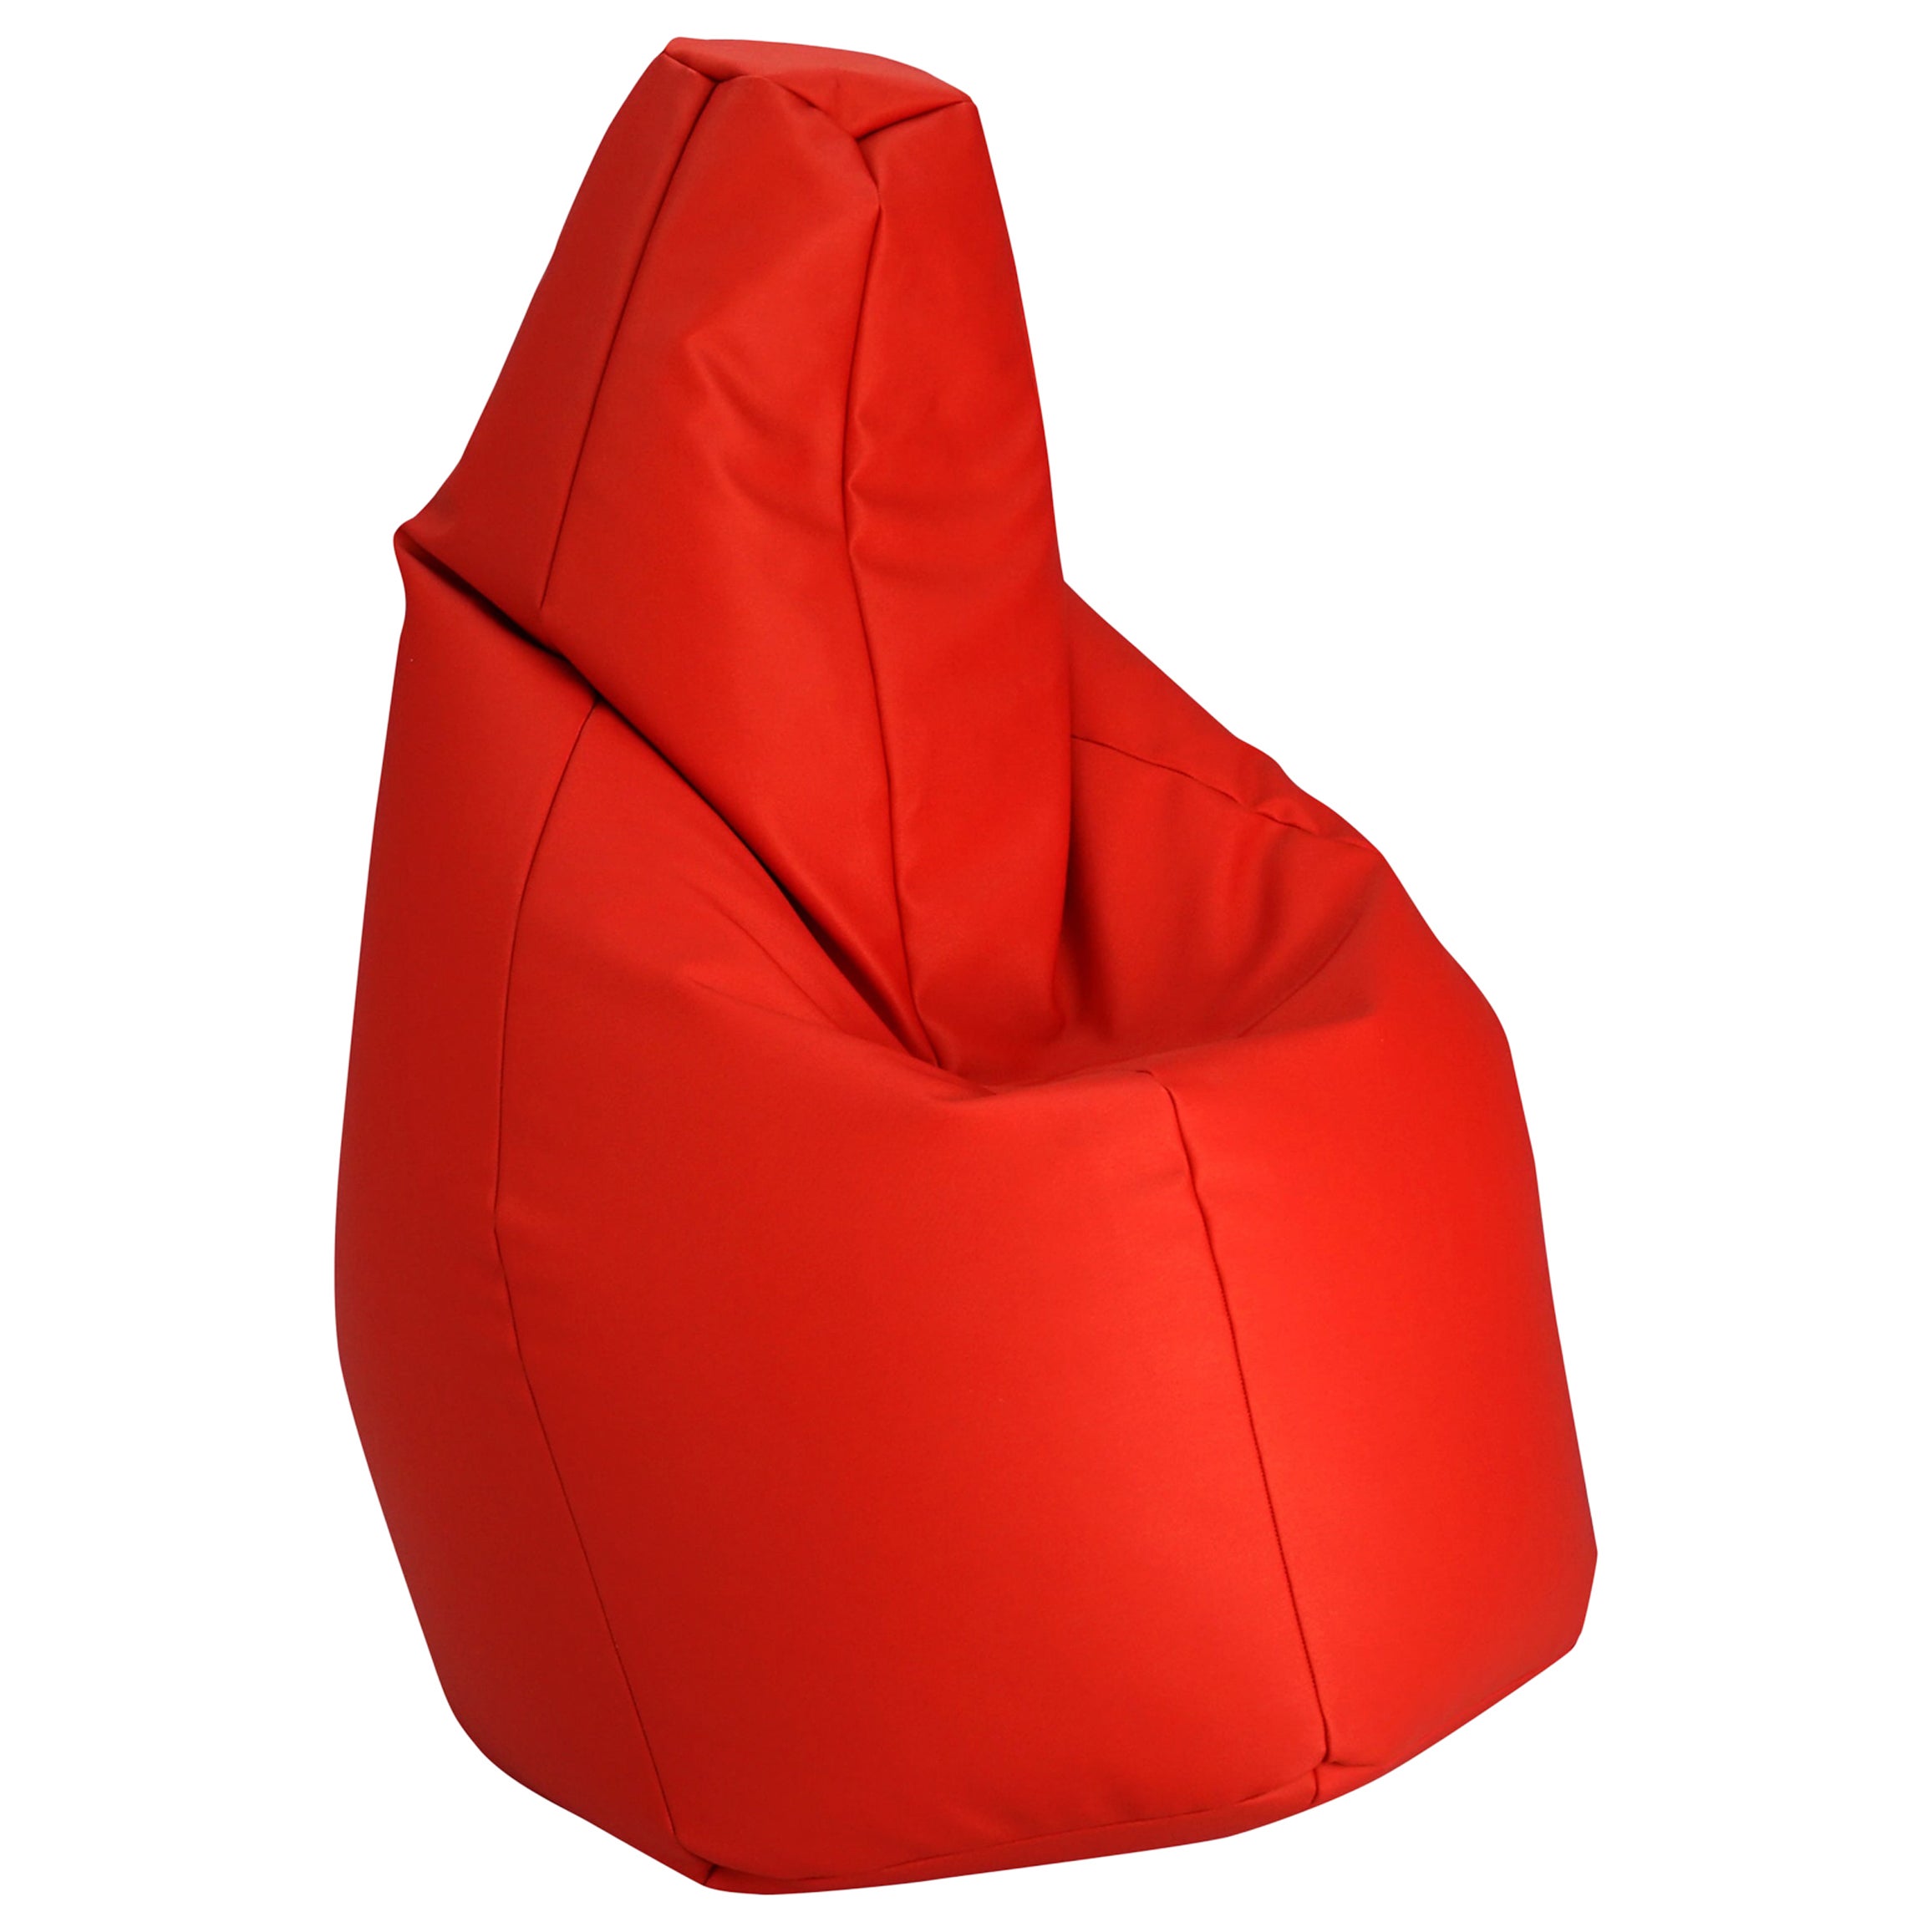 Zanotta Medium Sacco in Red Vip Fabric by Gatti, Paolini, Teodoro